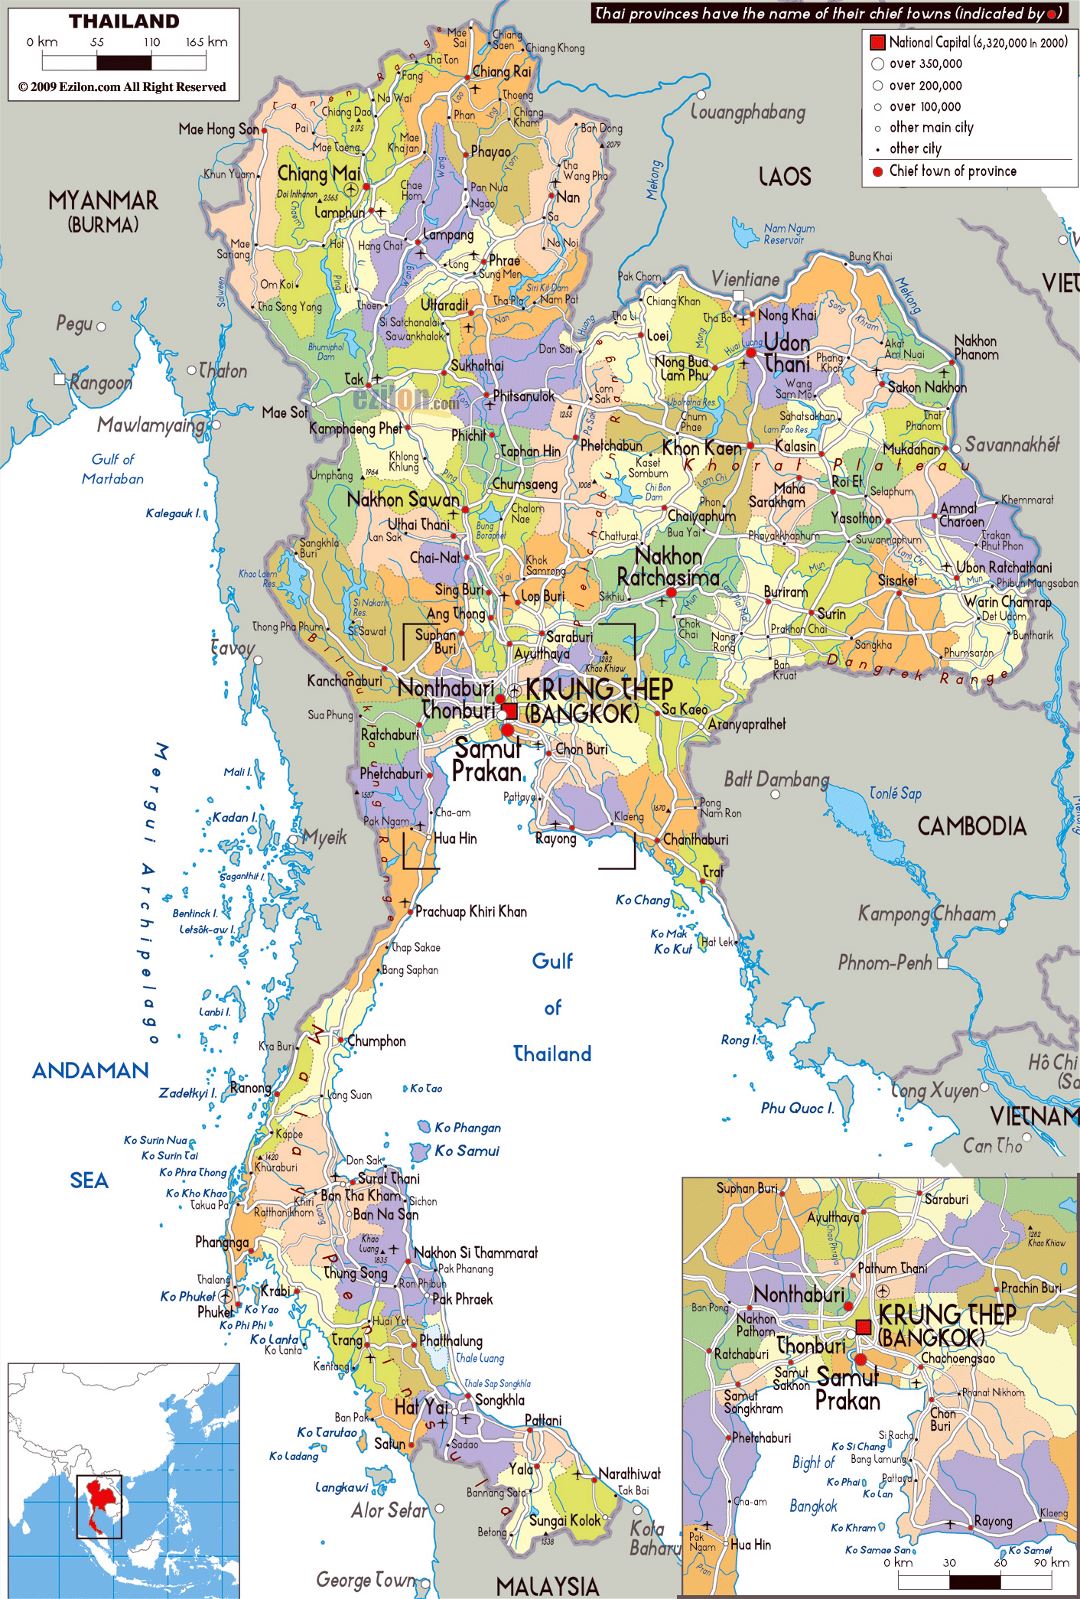 Grande mapa político y administrativo de Tailandia con carreteras, ciudades y aeropuertos